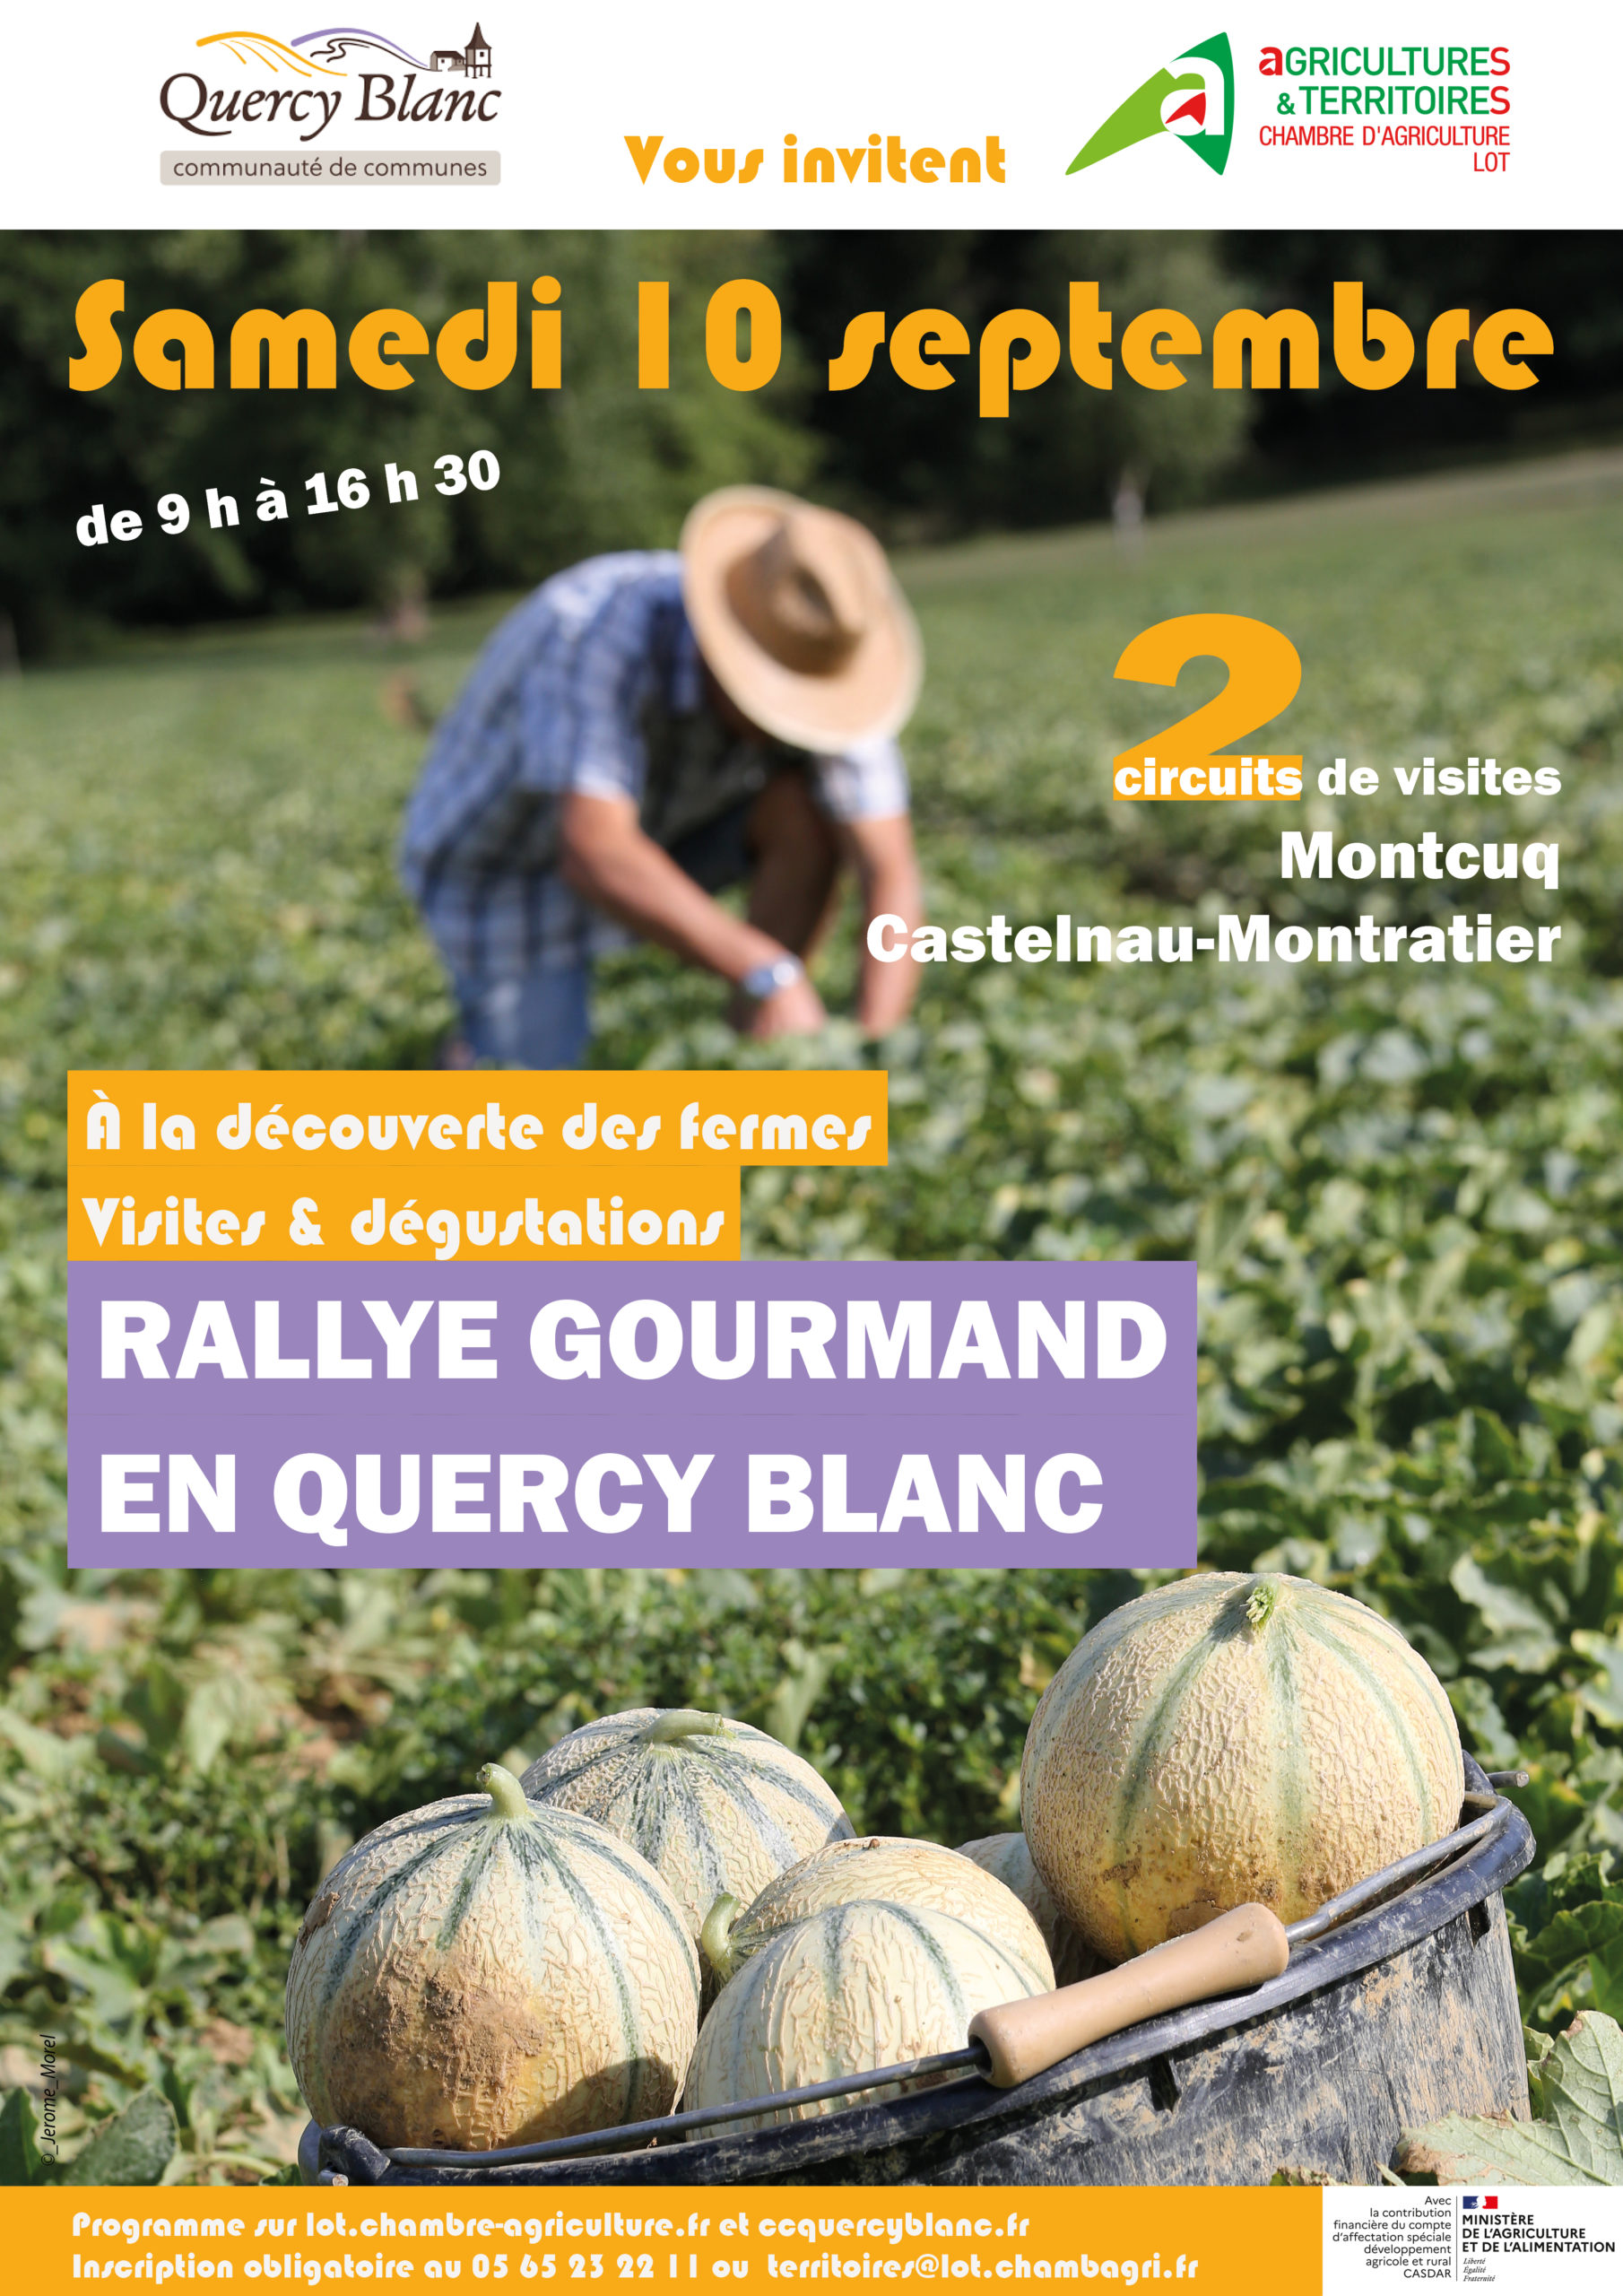 Rallye gourmand en Quercy Blanc ce 10 septembre !